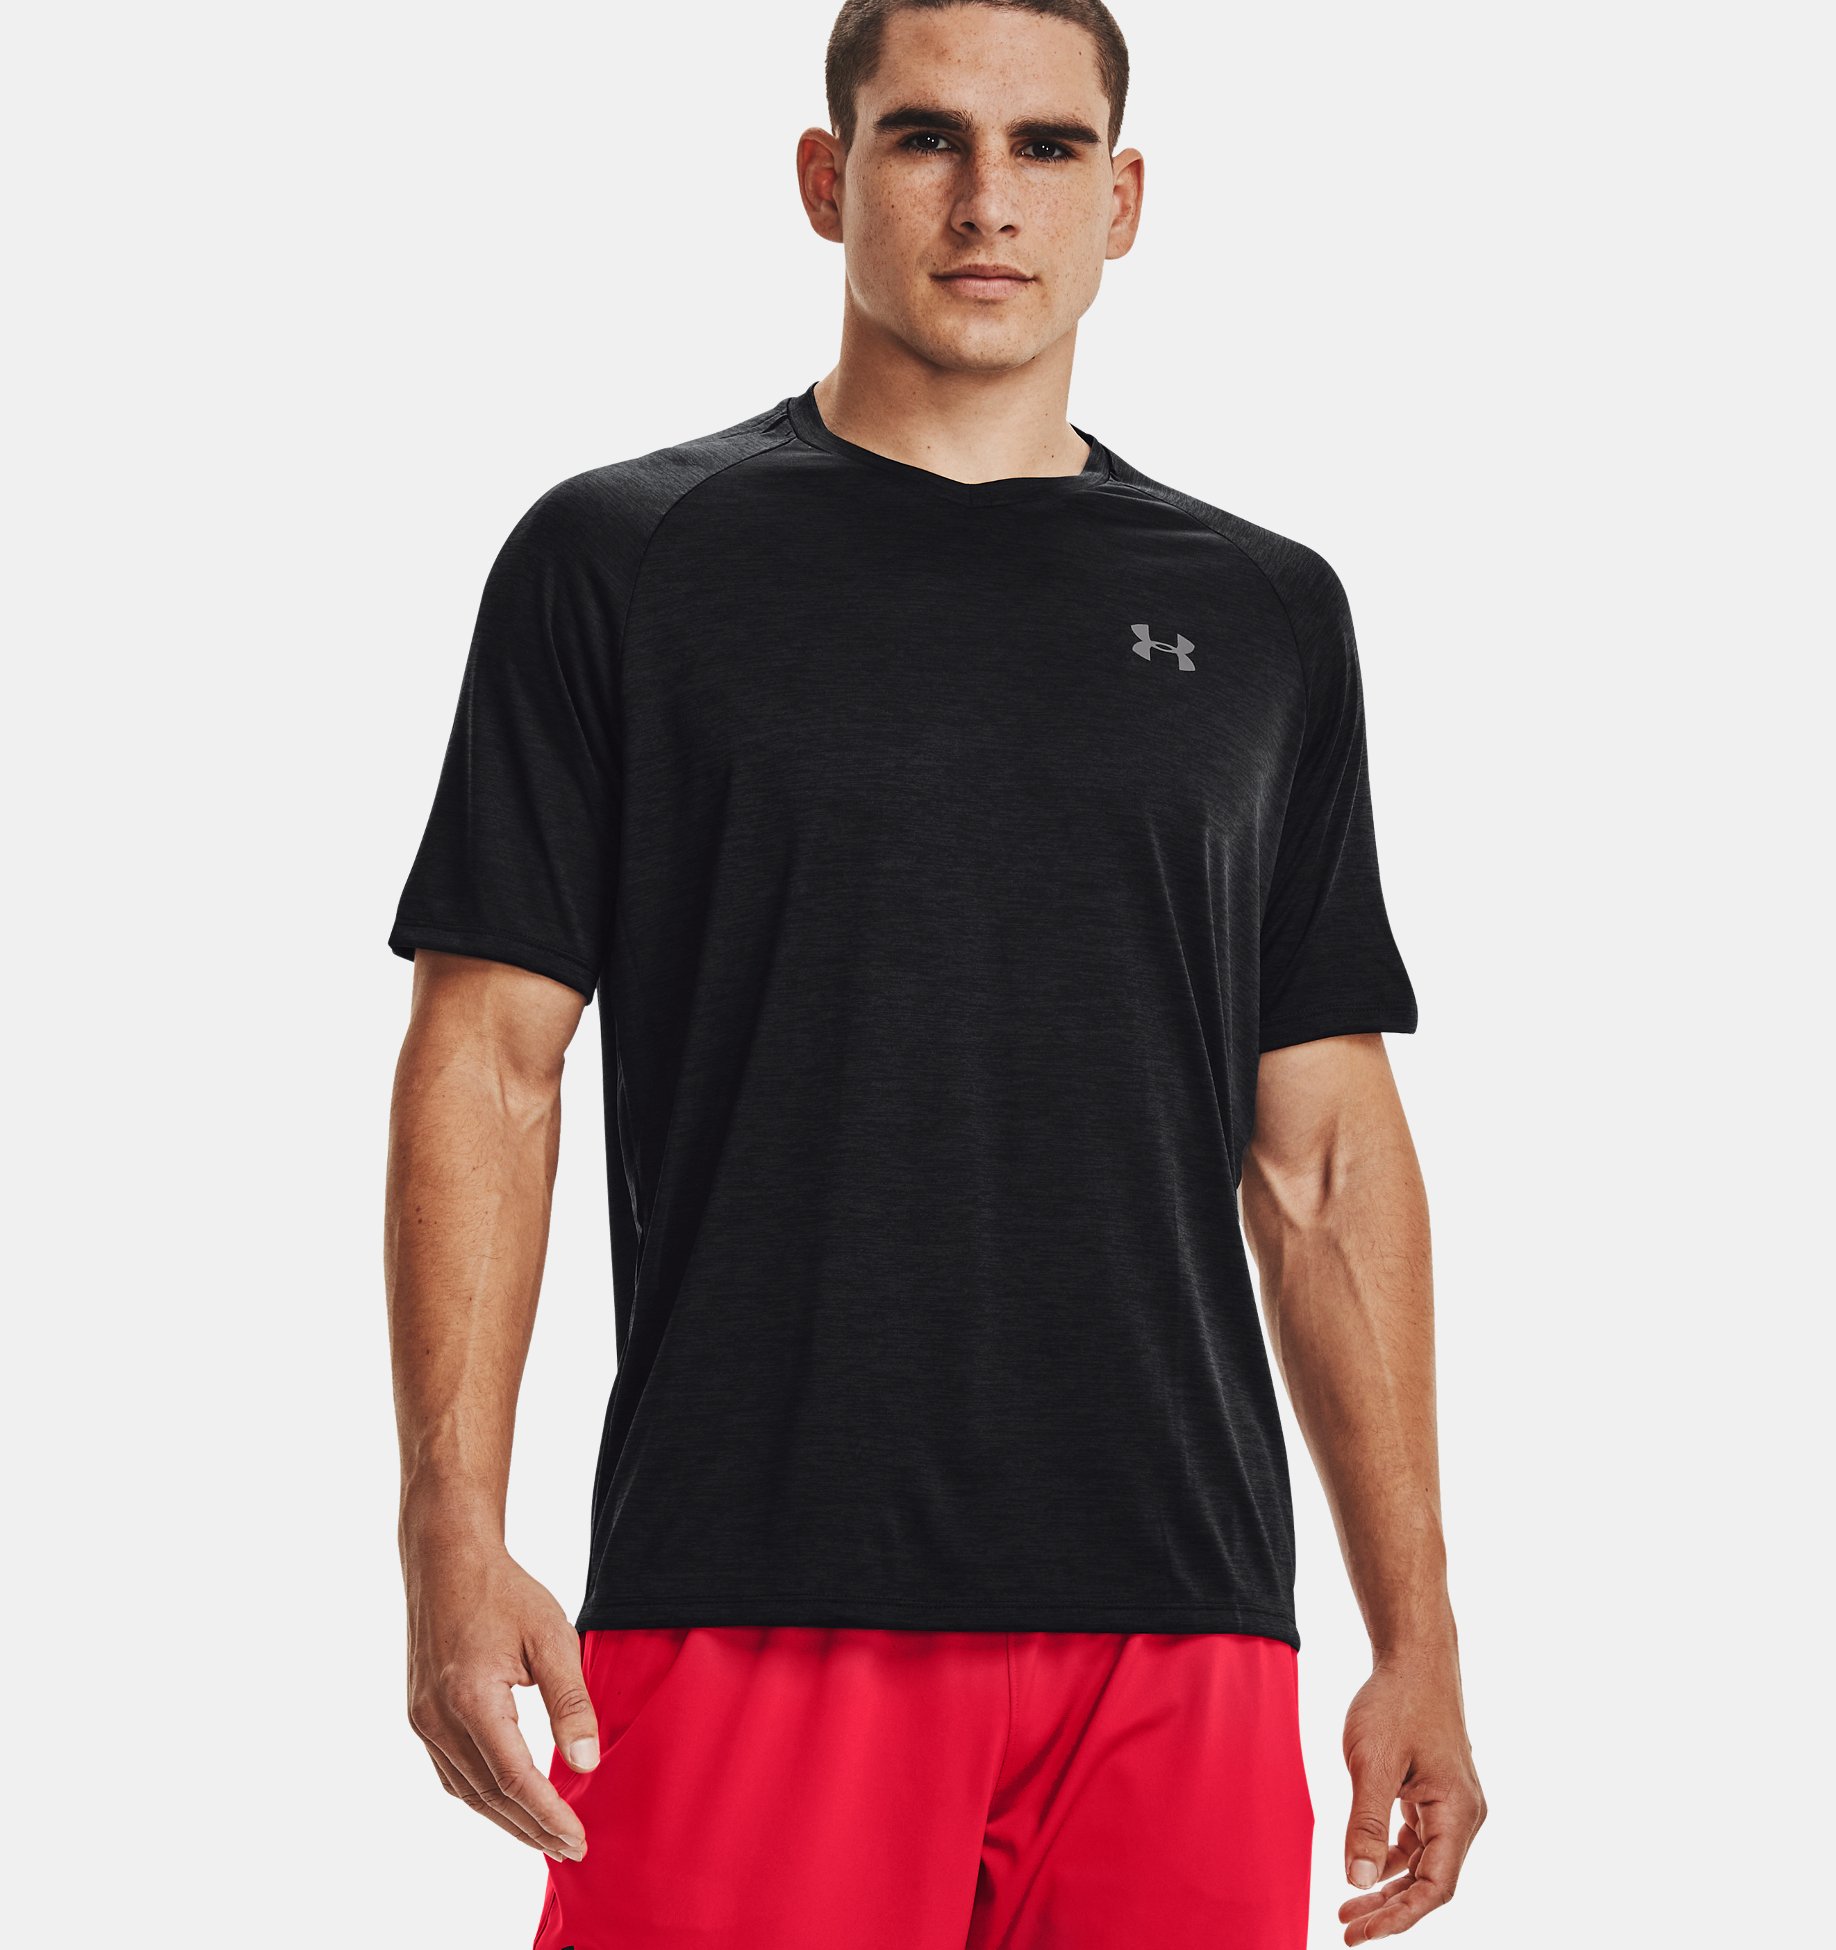 Men's T-Shirt Short Sleeve Summer Workout Casual Crew Neck Tee Shirt Track Tops 